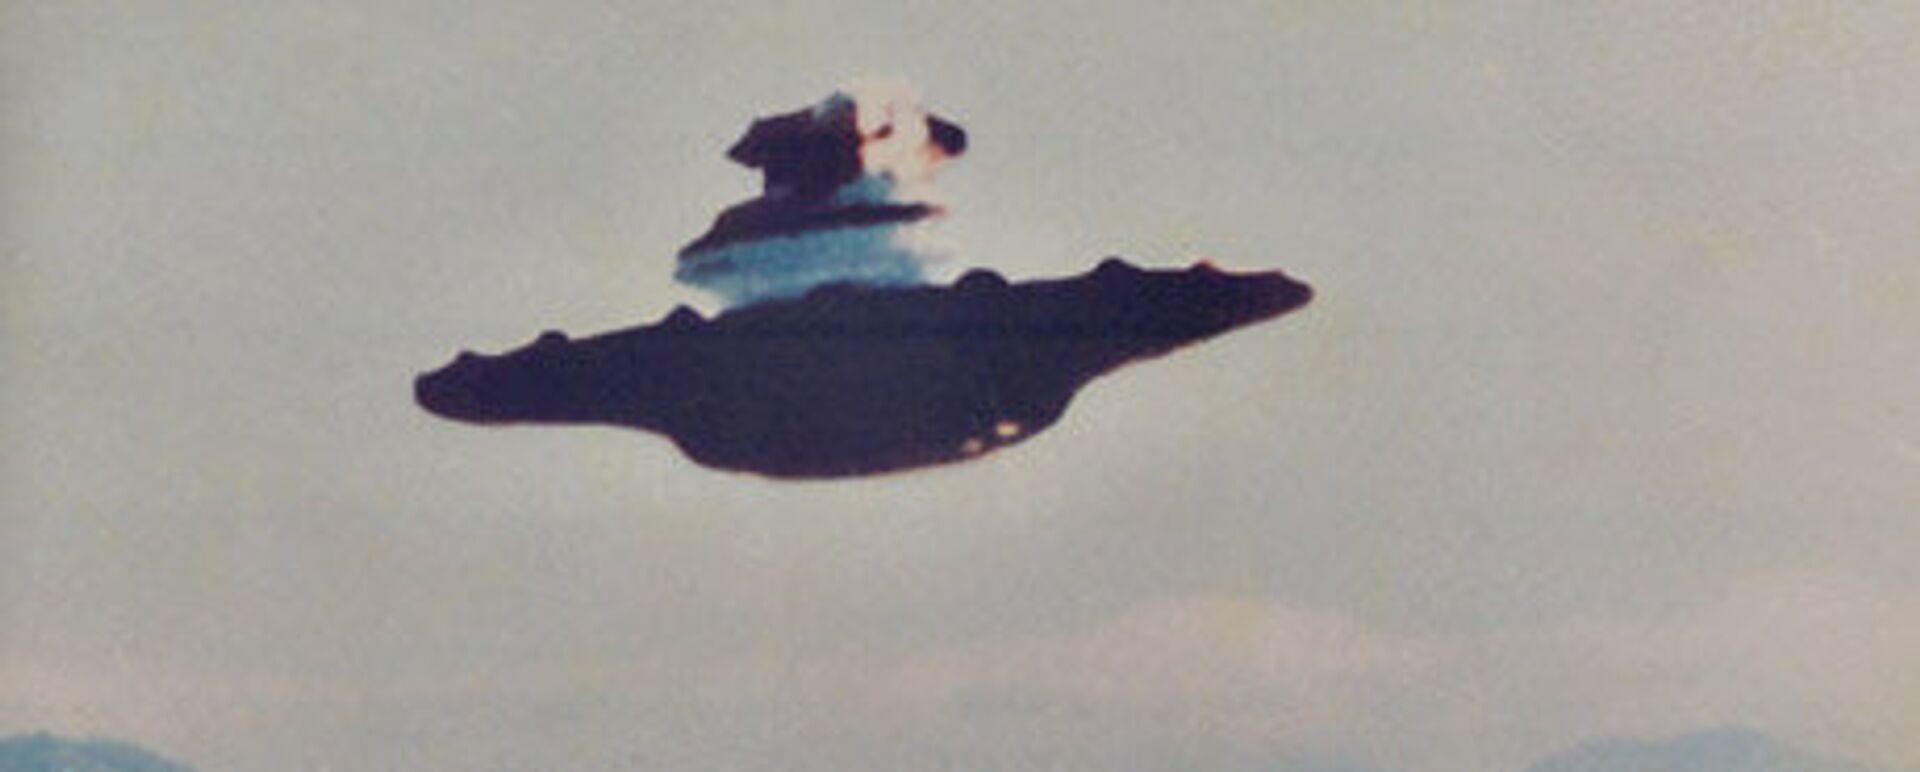 اسناد جدید: طیاره اکتشافی بالای بحیره مدیترانه با بشقاب پرنده روبرو شده بود - اسپوتنیک افغانستان  , 1920, 14.02.2023